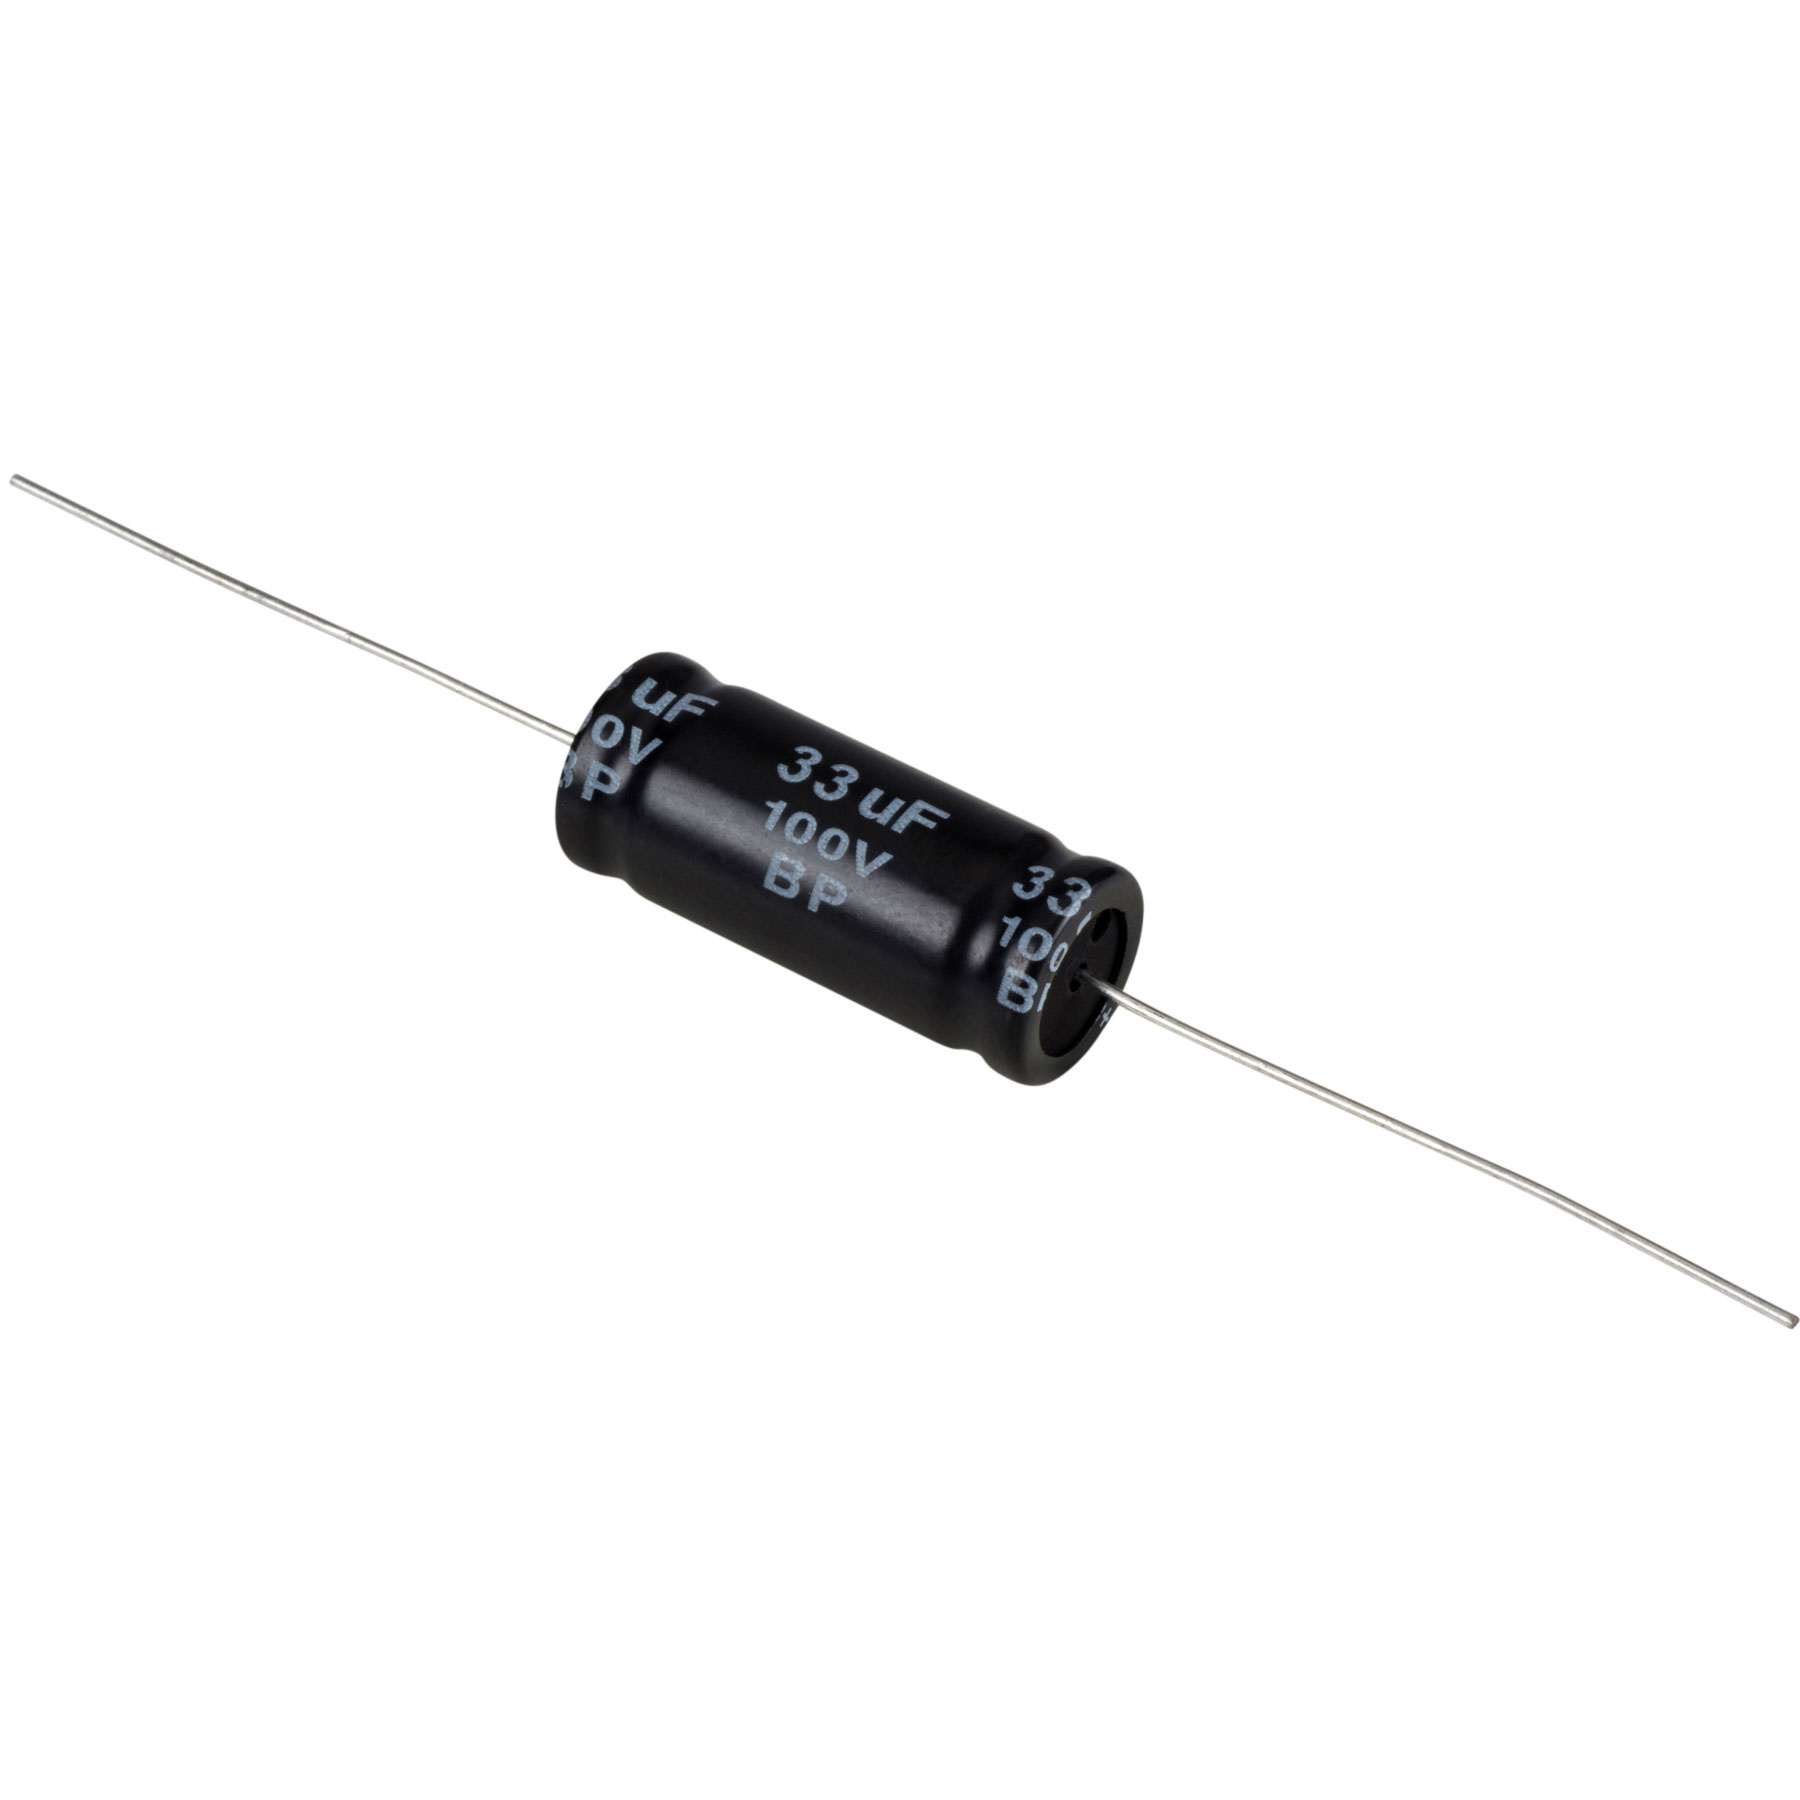 Condensatoare - Condensator electrolitic bipolar 33 µF | 10% | 100 V, audioclub.ro